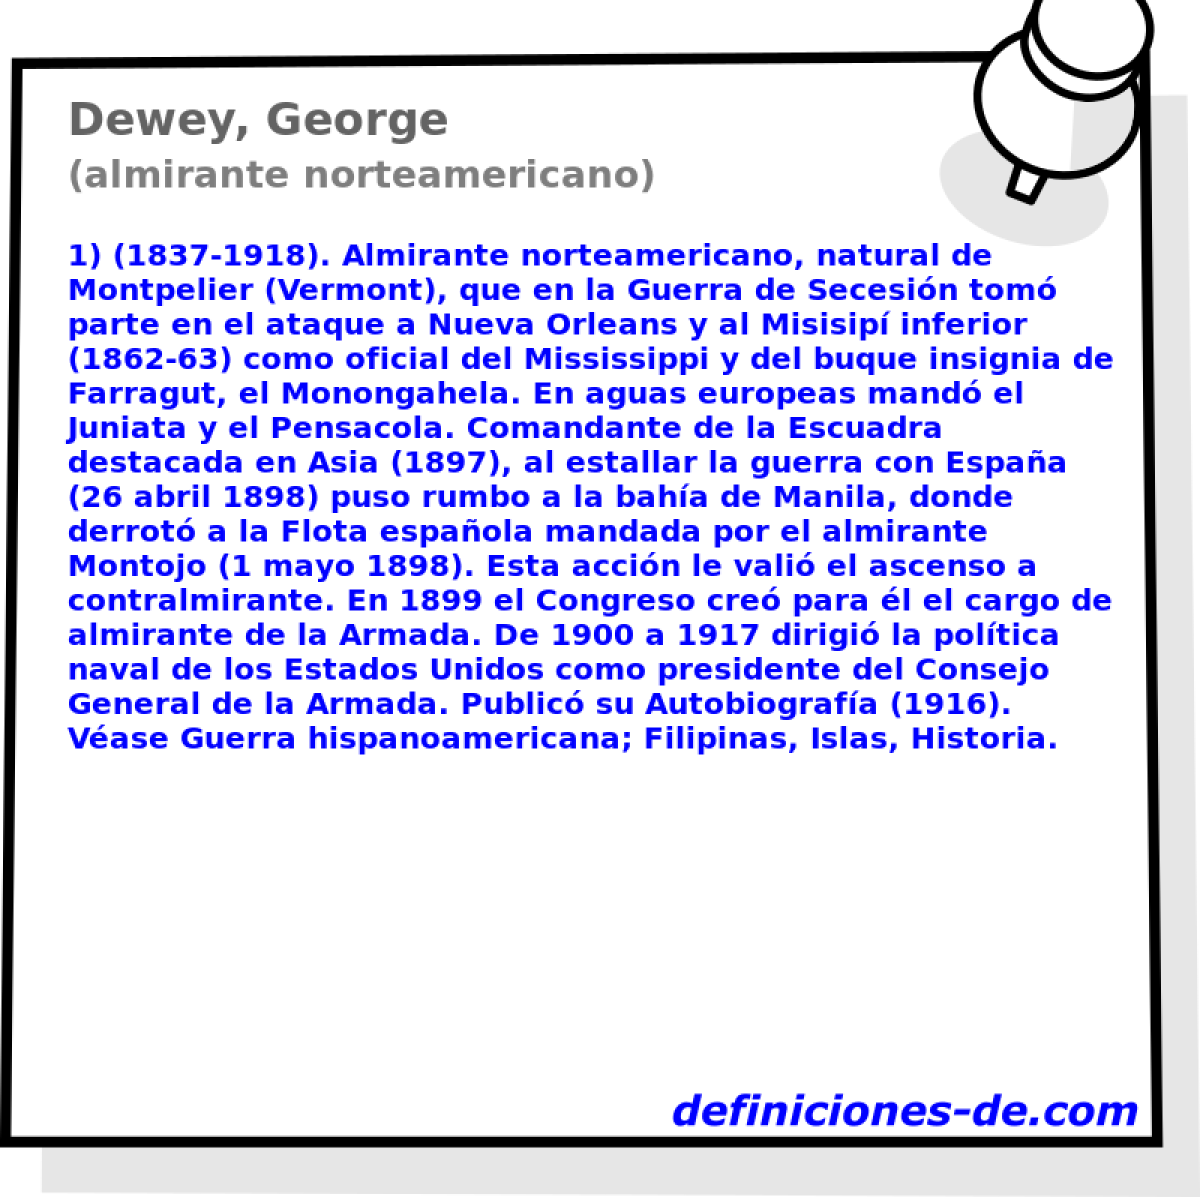 Dewey, George (almirante norteamericano)